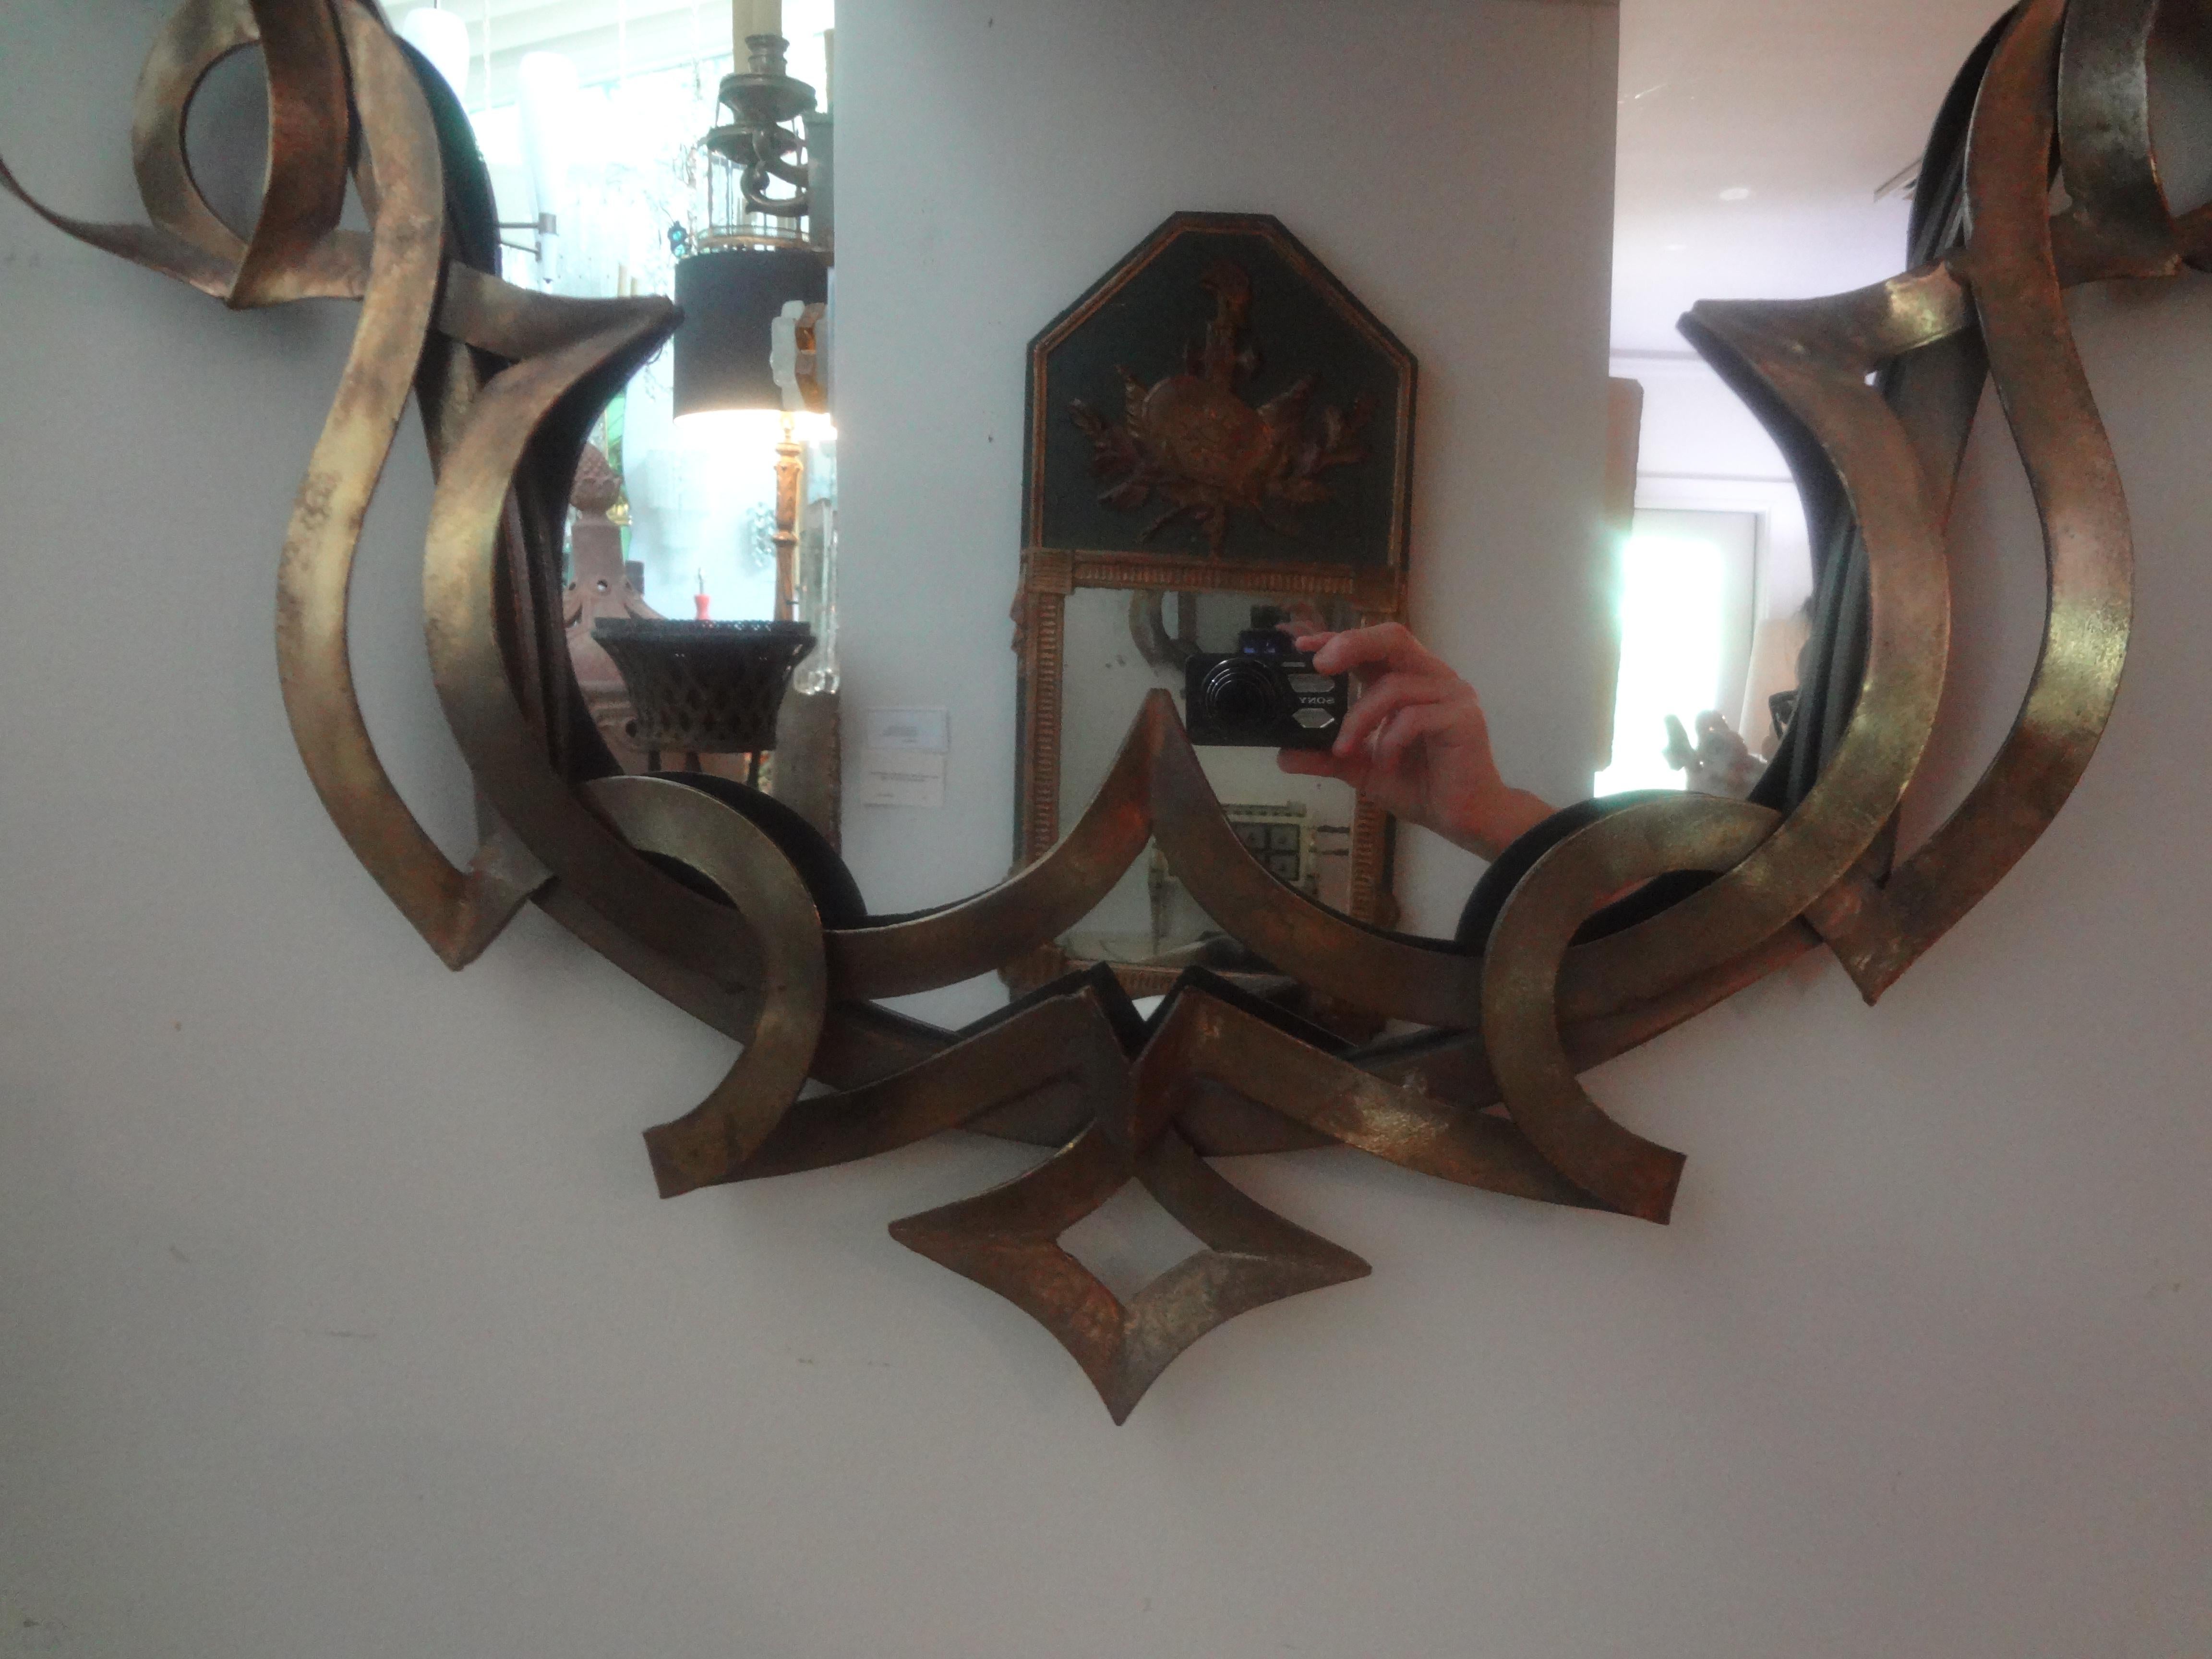 Miroir vintage en métal patiné avec ruban.
Ce miroir chic en métal patiné du milieu du siècle dernier présente un design en ruban entourant un panneau central en miroir.
Notre miroir inspiré de Gilbert Poillerat est parfait pour un hall d'entrée